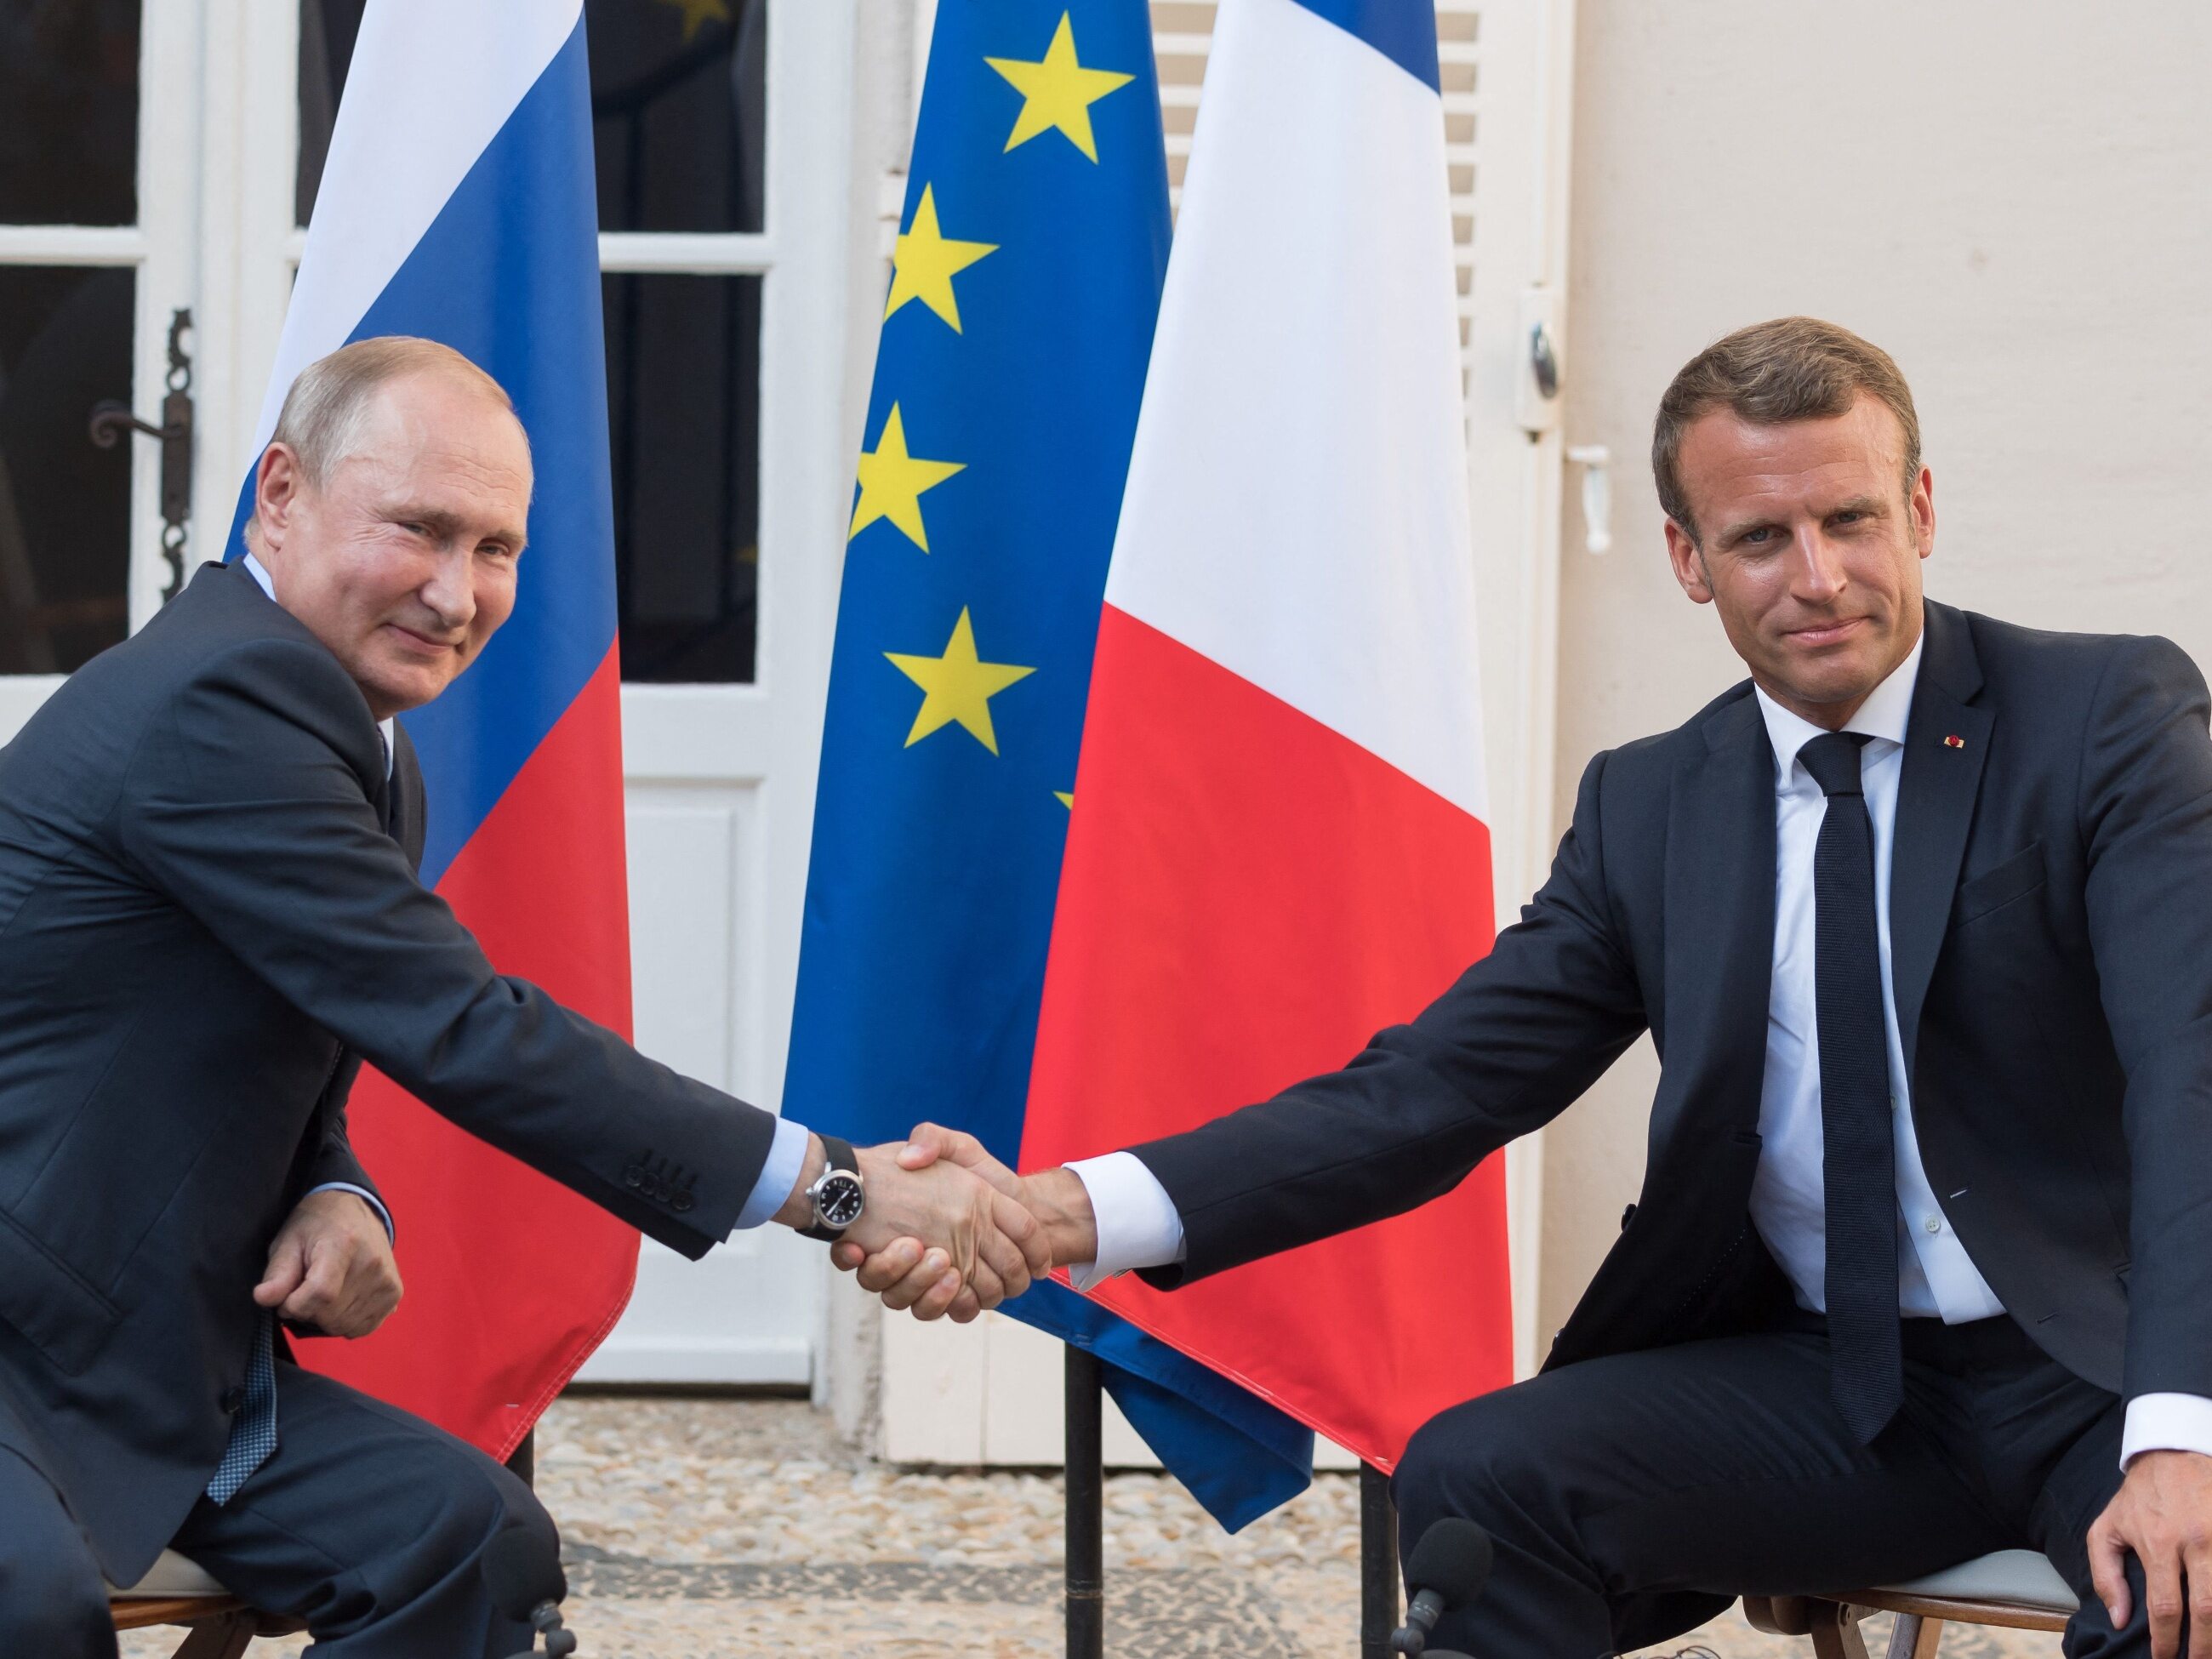 Frontière polono-biélorusse.  Macron a parlé à Poutine.  Un accord a-t-il été trouvé ?  – Correct